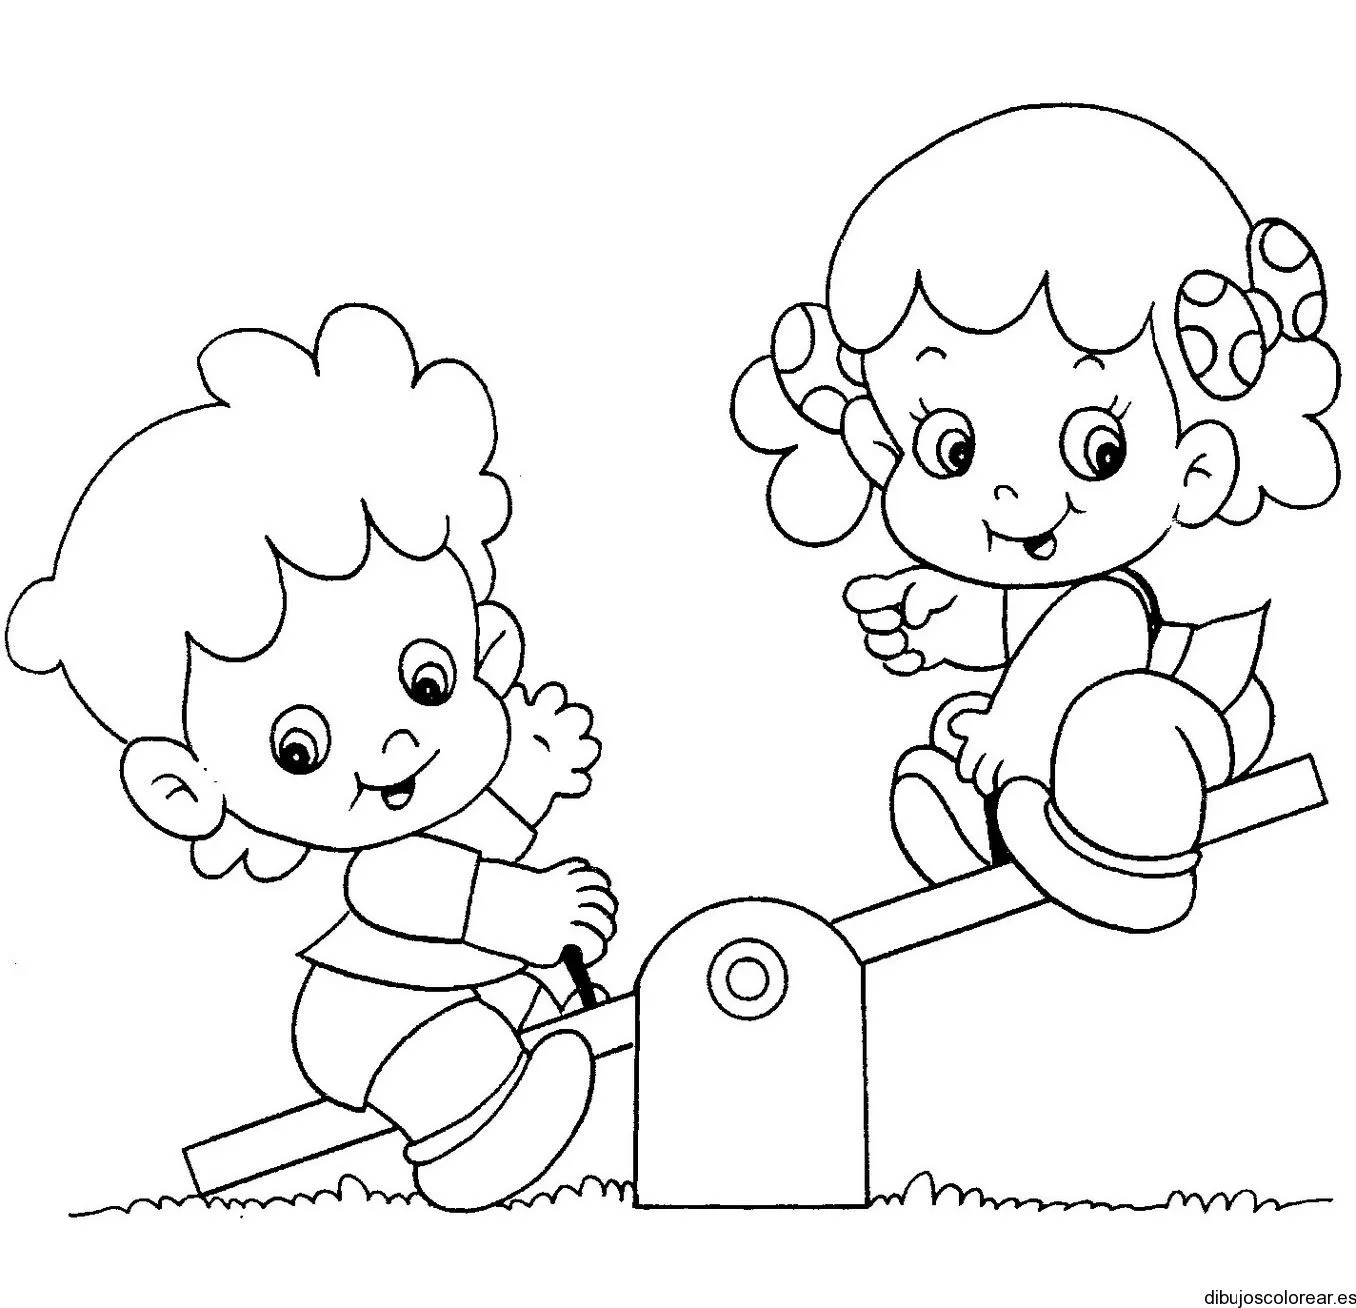 Dibujo de dos niñas jugando en el parque | Dibujos para Colorear